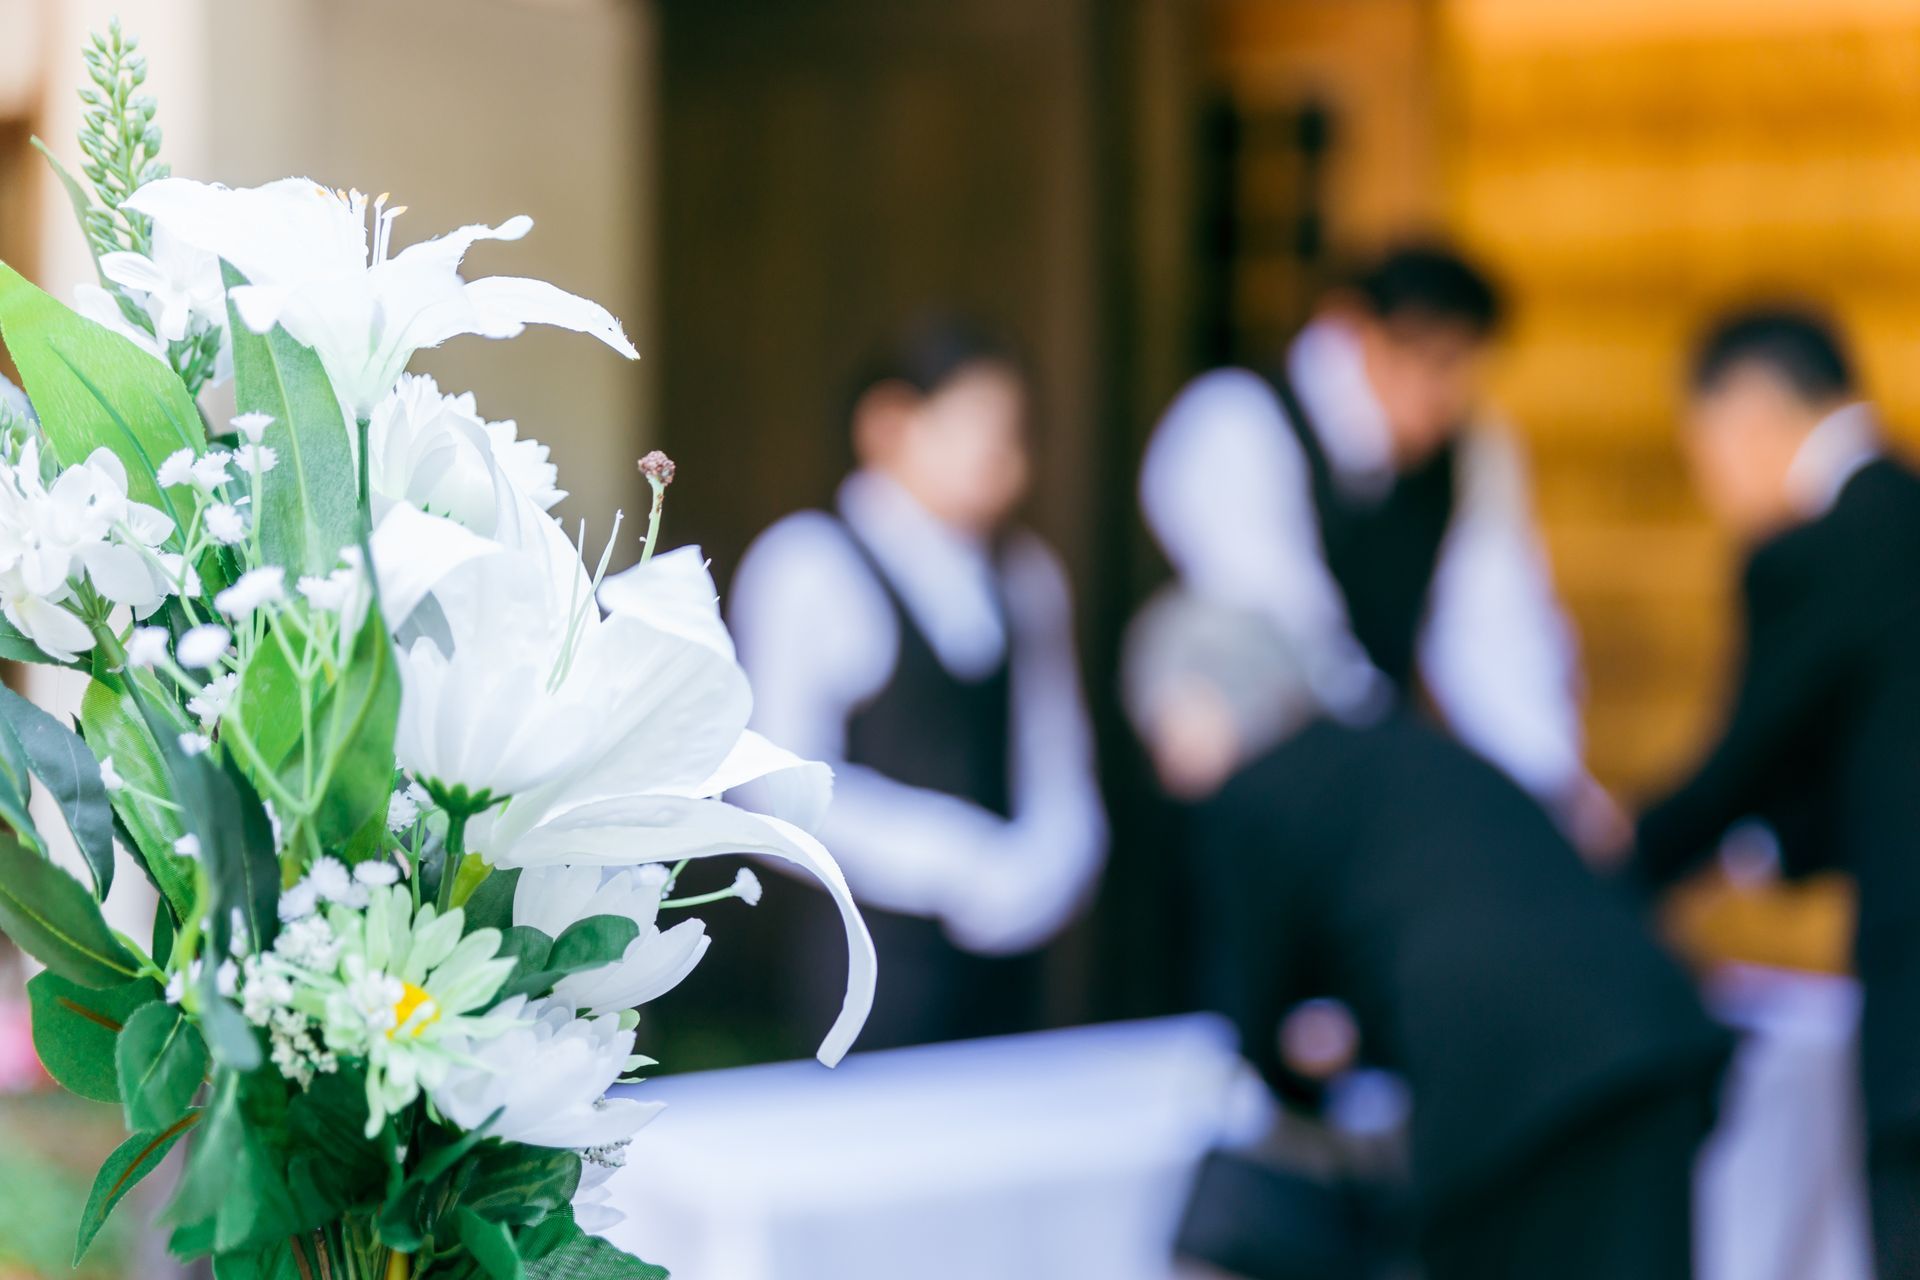 Des fleurs blanches au premier plan d'un enterrement